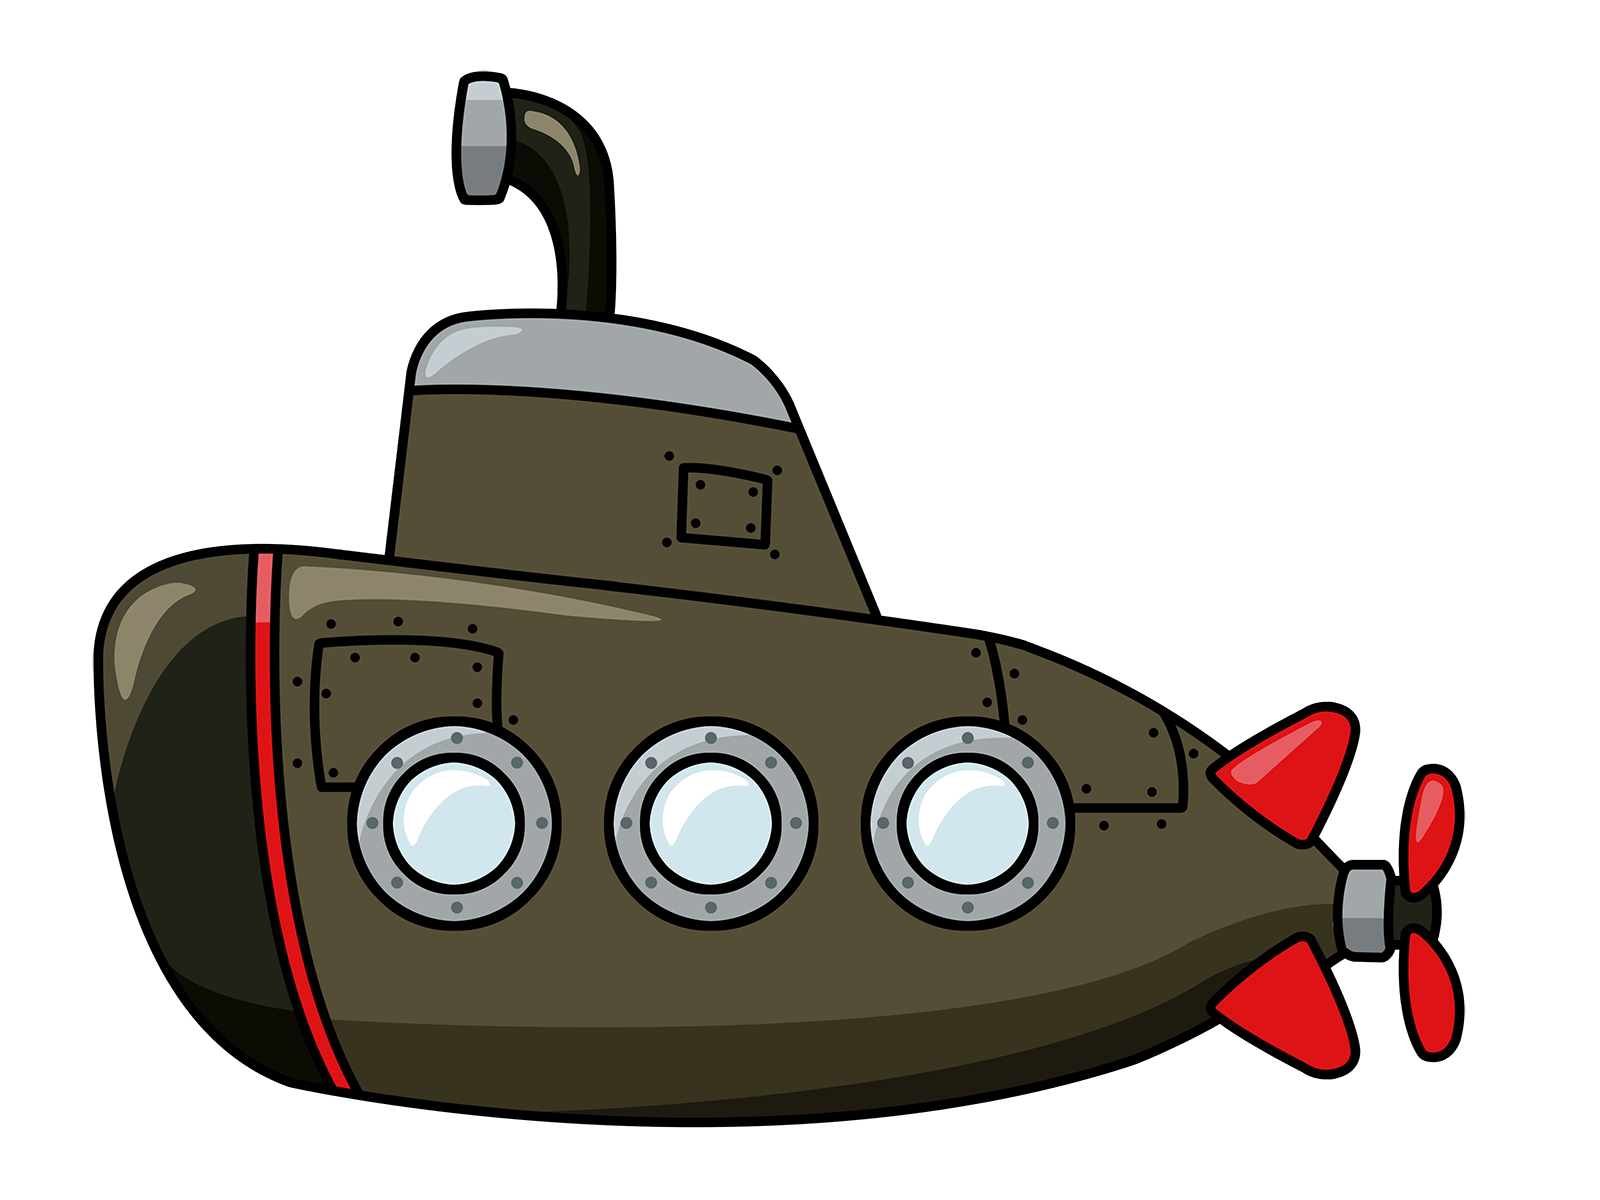 Submarine 20clipart.